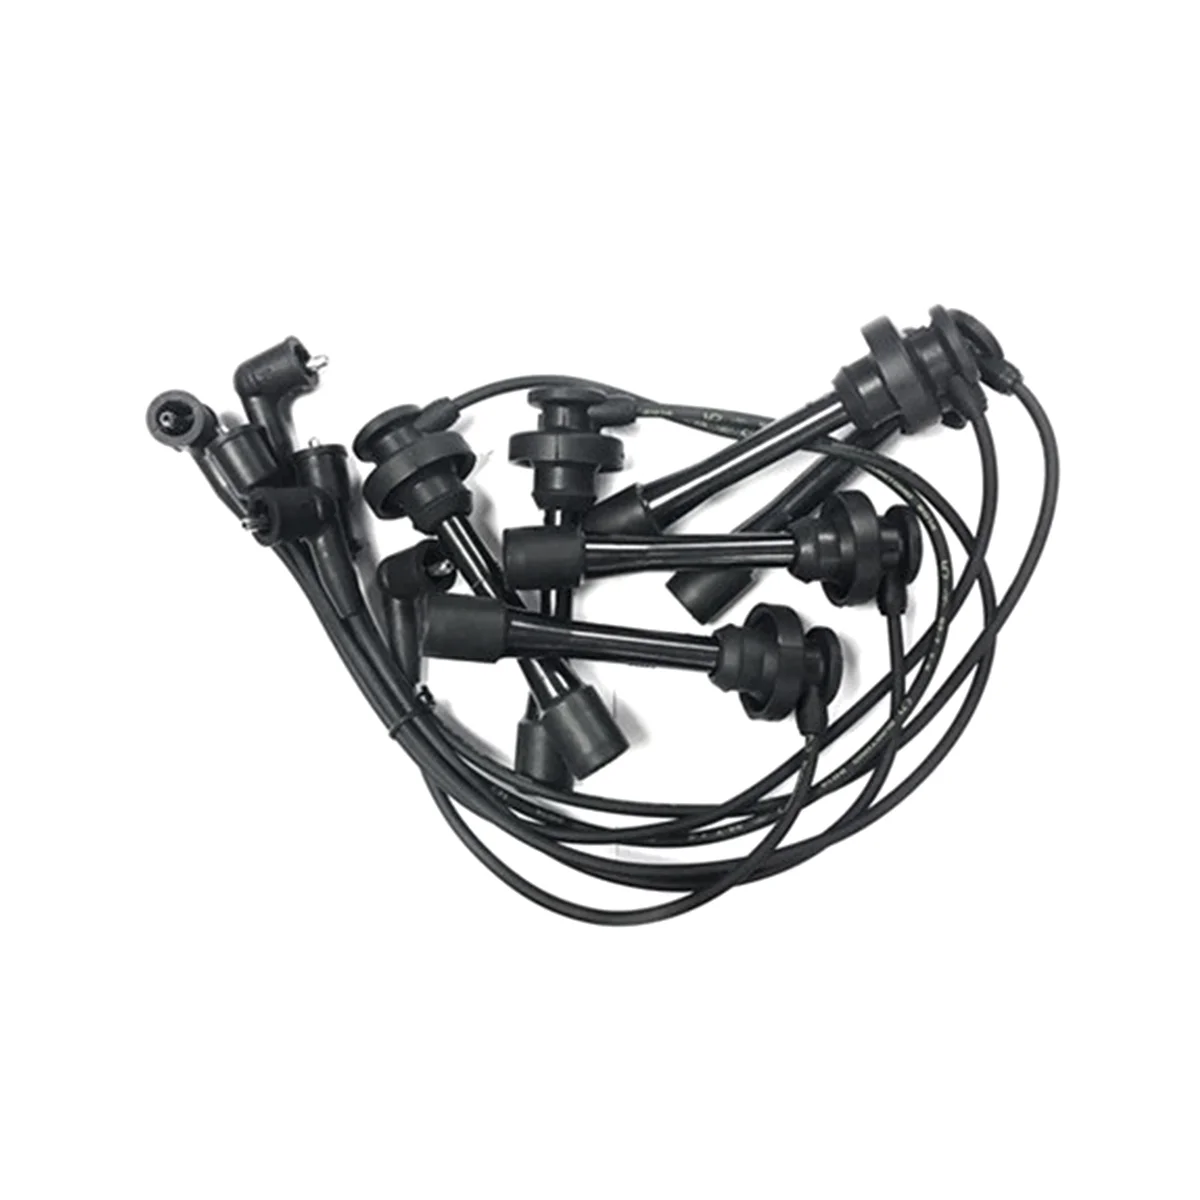 

1 Set Spark Plug Cable Set for Mitsubishi Pajero Montero Sport Challenger Nativa Triton L200 6G72 6G74 MD371794 MD338249